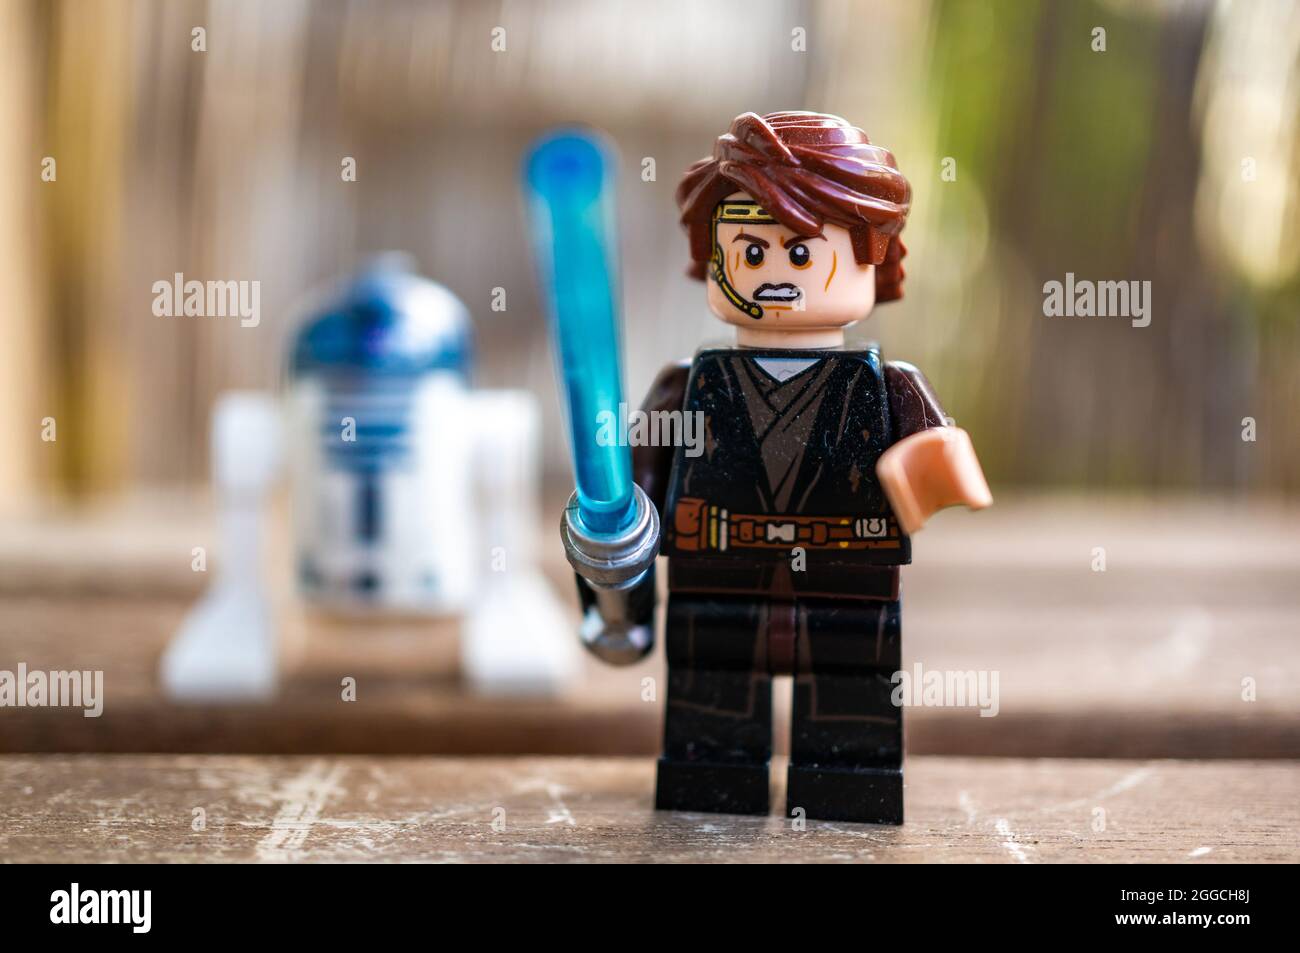 POZNAN, POLONIA - 09 de agosto de 2021: La Lego Star Wars Anakin Skywalker  juguete figurita sosteniendo una espada láser azul Fotografía de stock -  Alamy